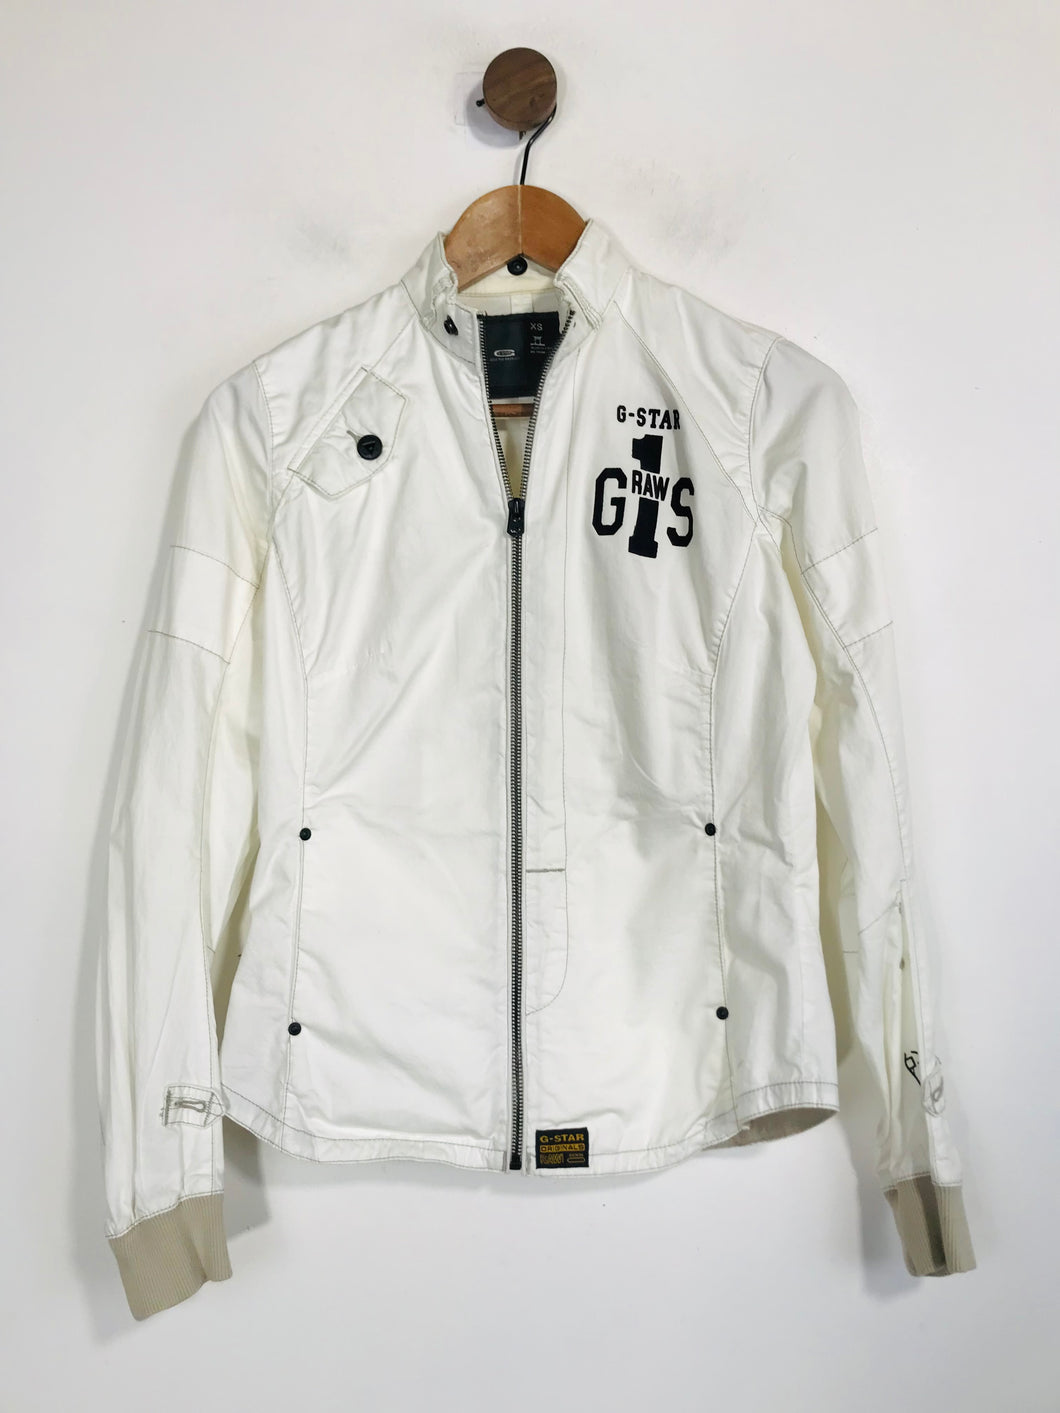 G-Star Raw Women's Cotton Zip Bomber Jacket | XS UK6-8 | White